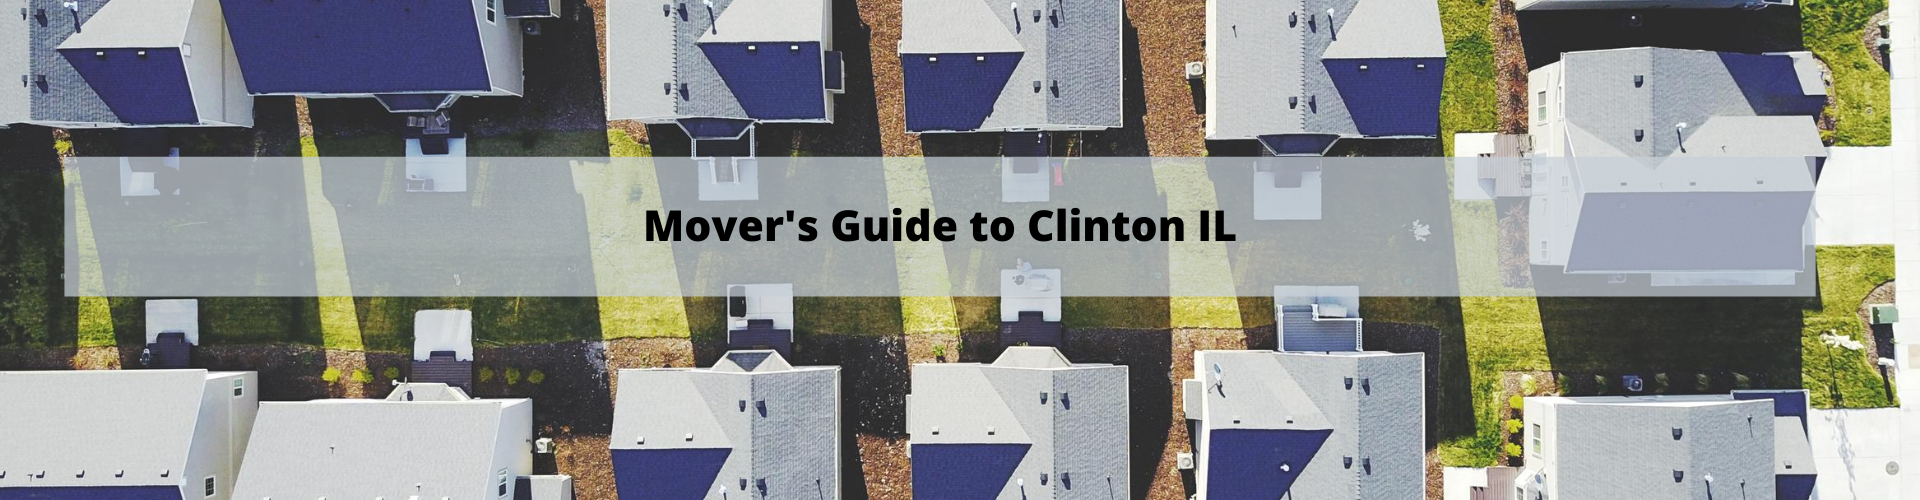 Mover's Guide to Clinton IL